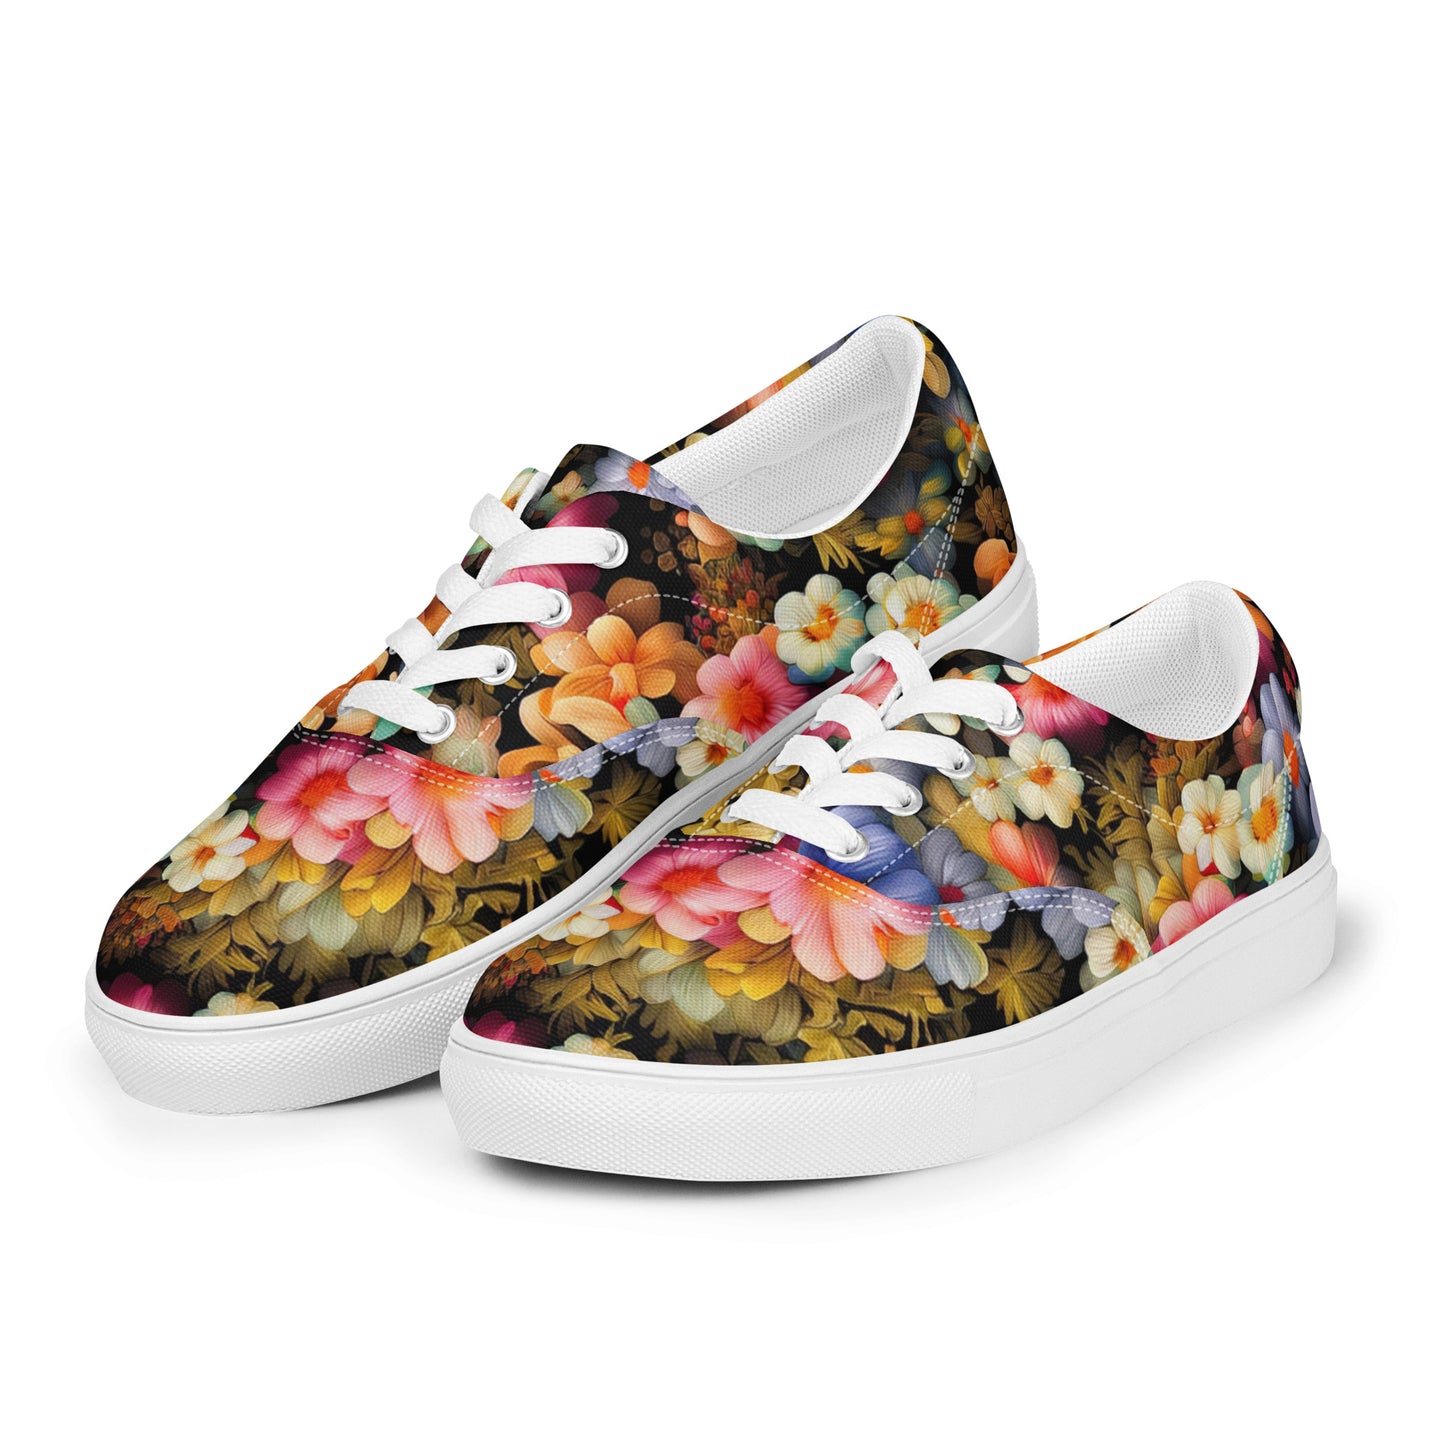 DMV 1522 Floral Men’s lace-up canvas shoes